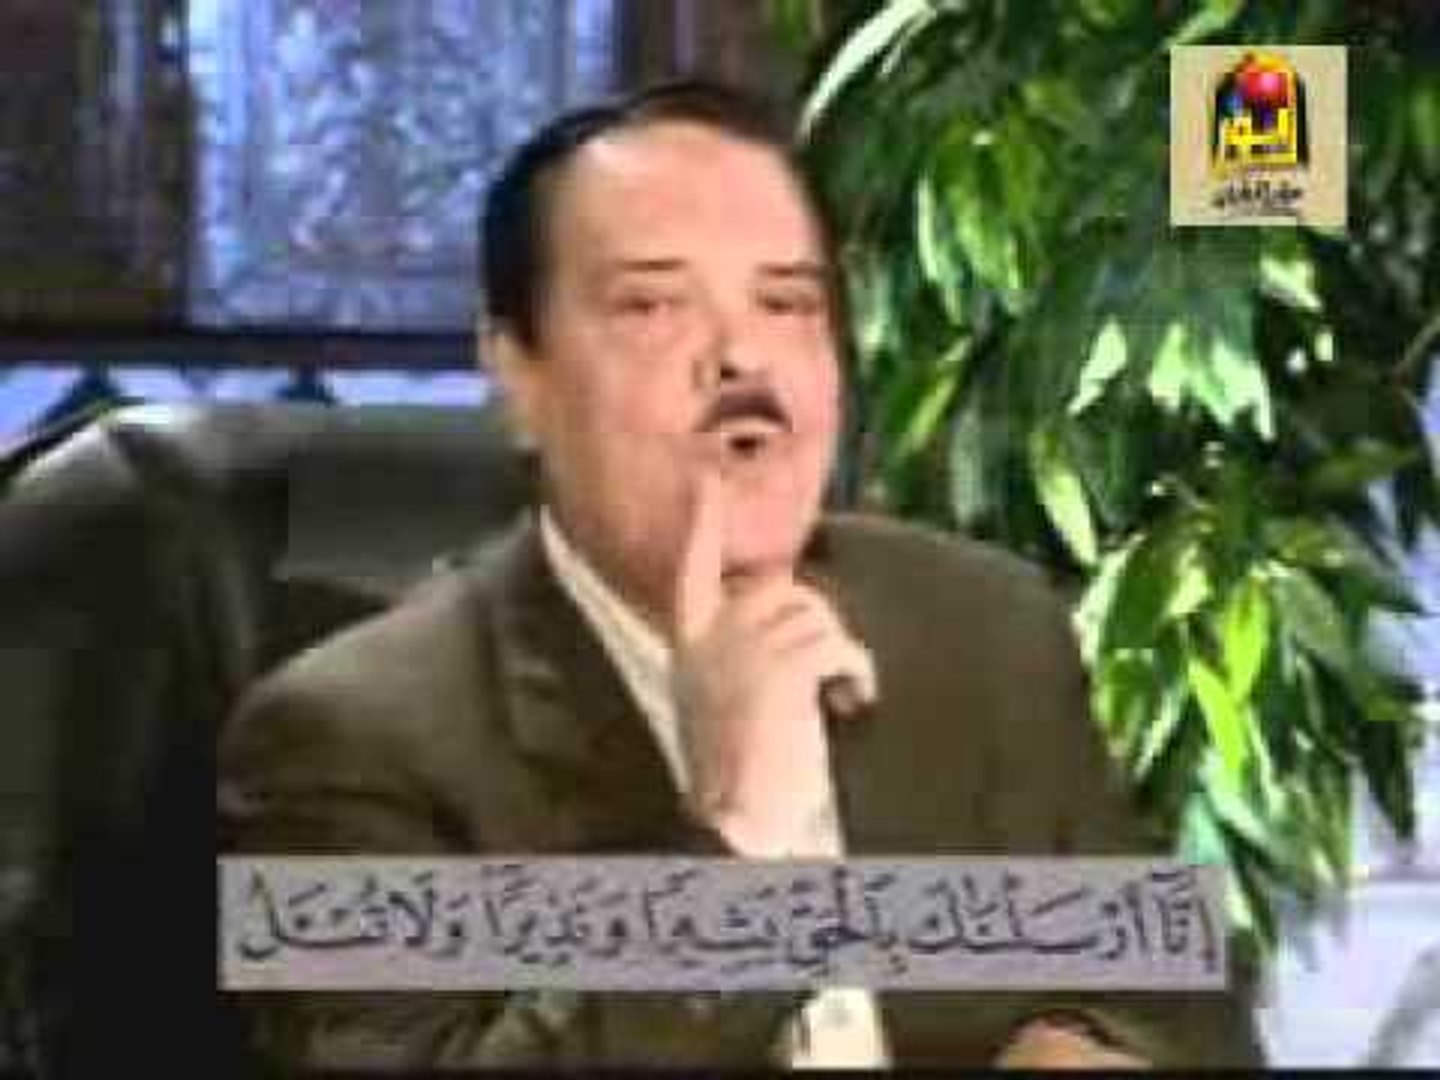 برنامج الشيخ أحمد عامر الجزء الثاني الحلقة رقم - 13 | برنامج ديني |